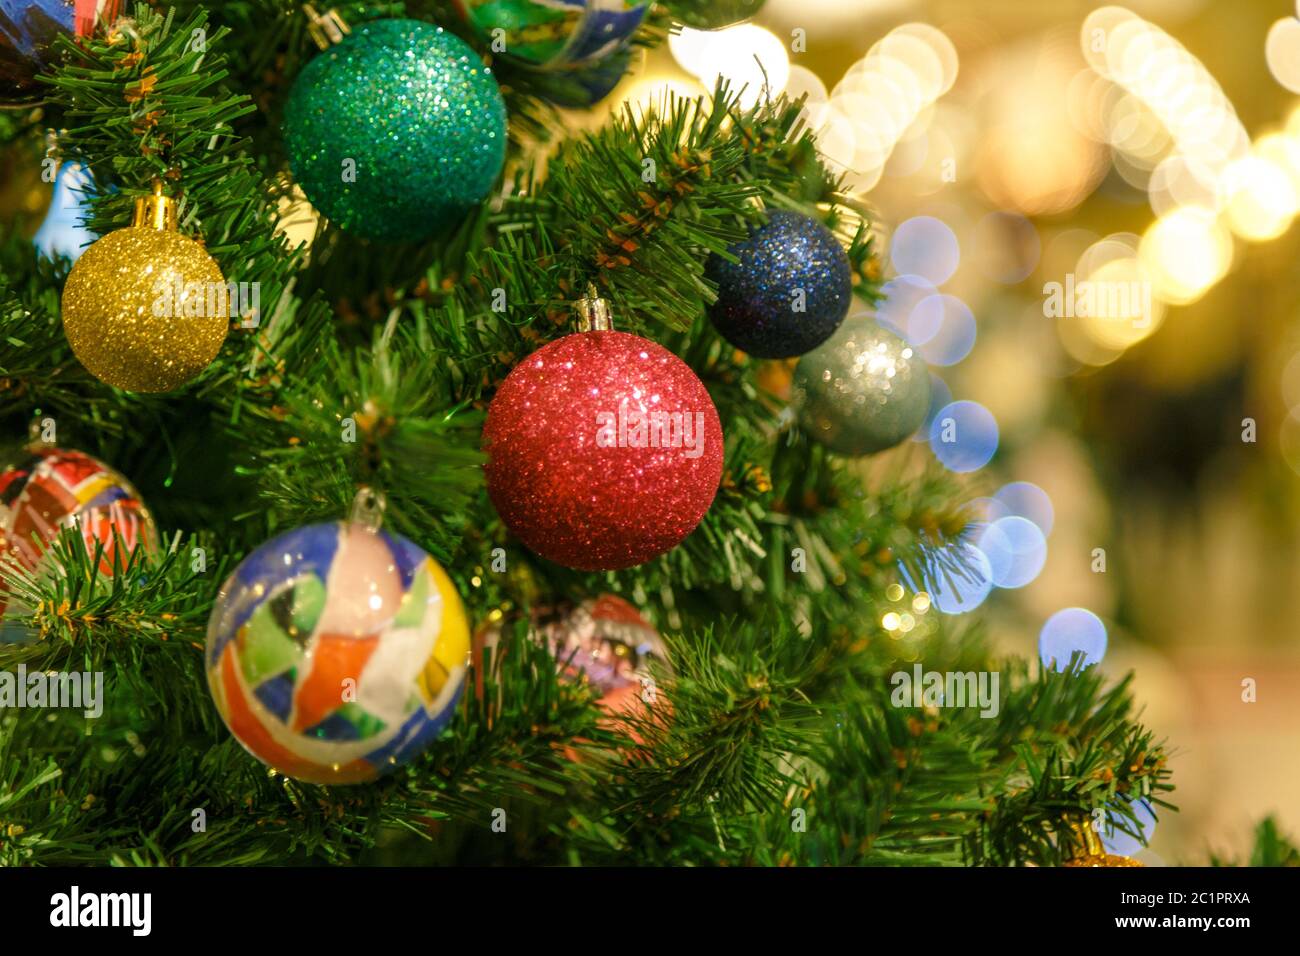 Der Weihnachtsbaum ist ein dekorierter immergrüner Nadelbaum, echt oder künstlich, und eine beliebte Tradition, die mit der cel verbunden ist Stockfoto